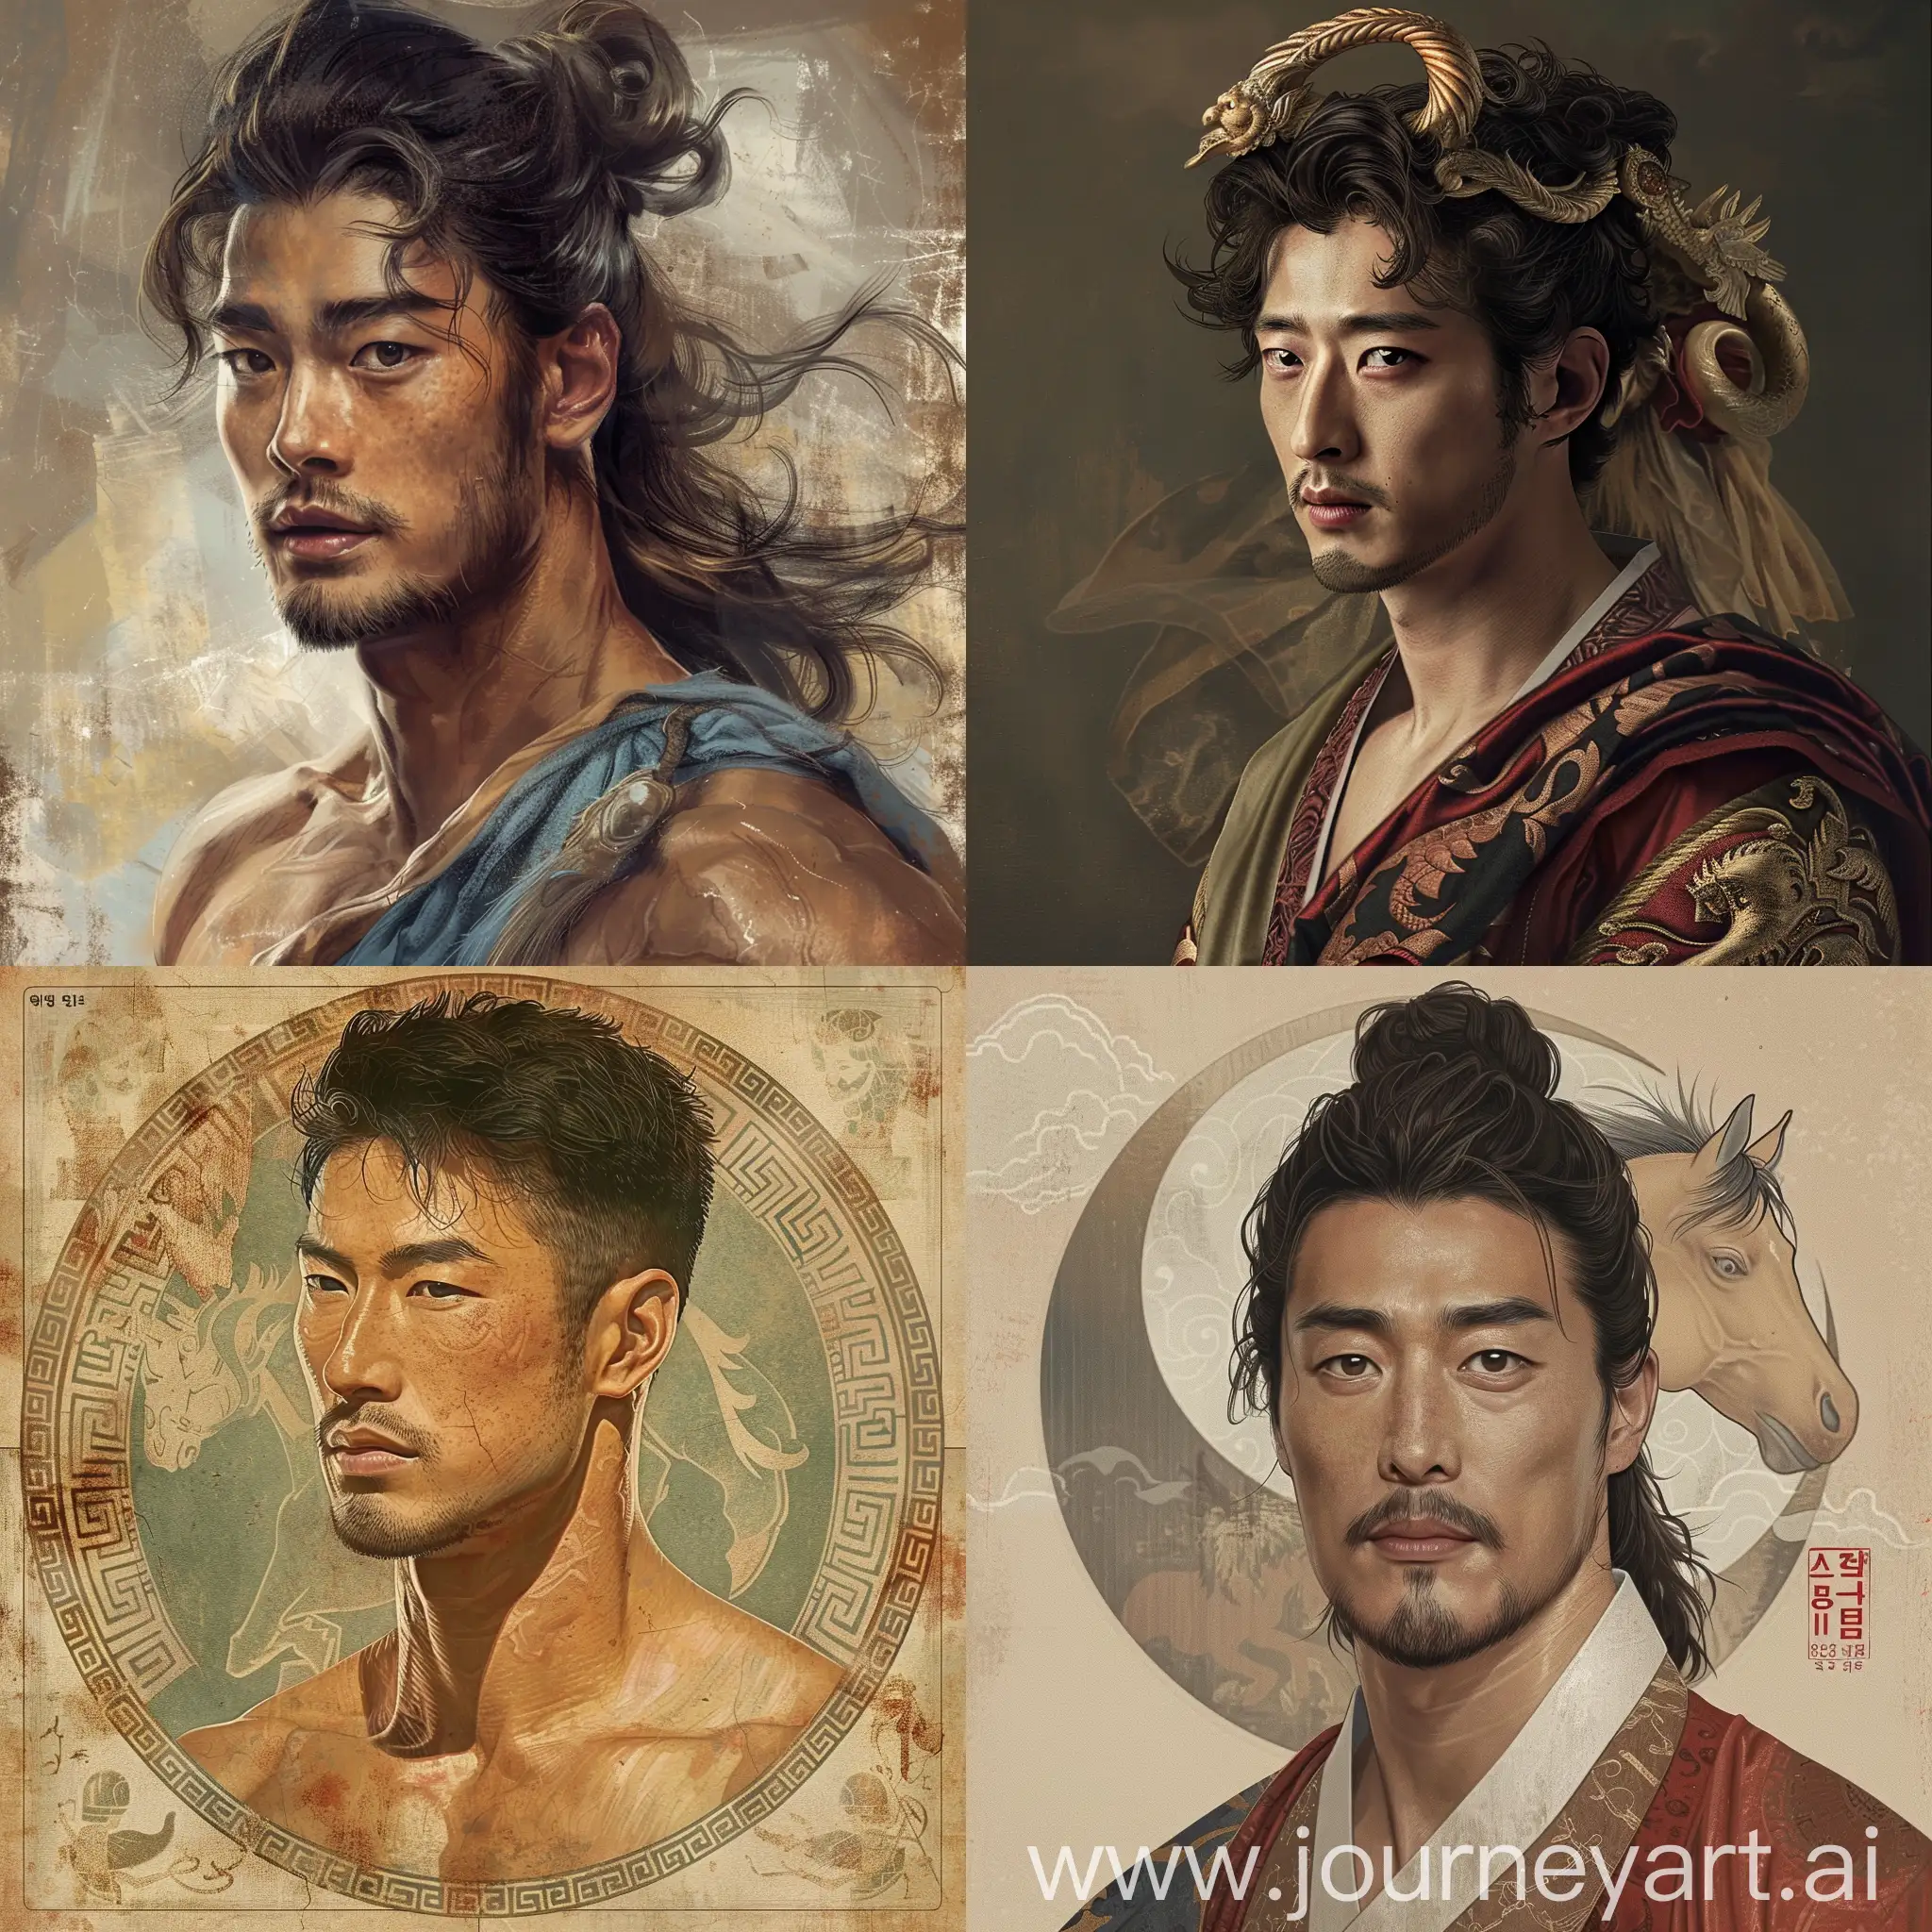 Korean-Man-Transformed-into-Ancient-Greek-Mythological-Figure